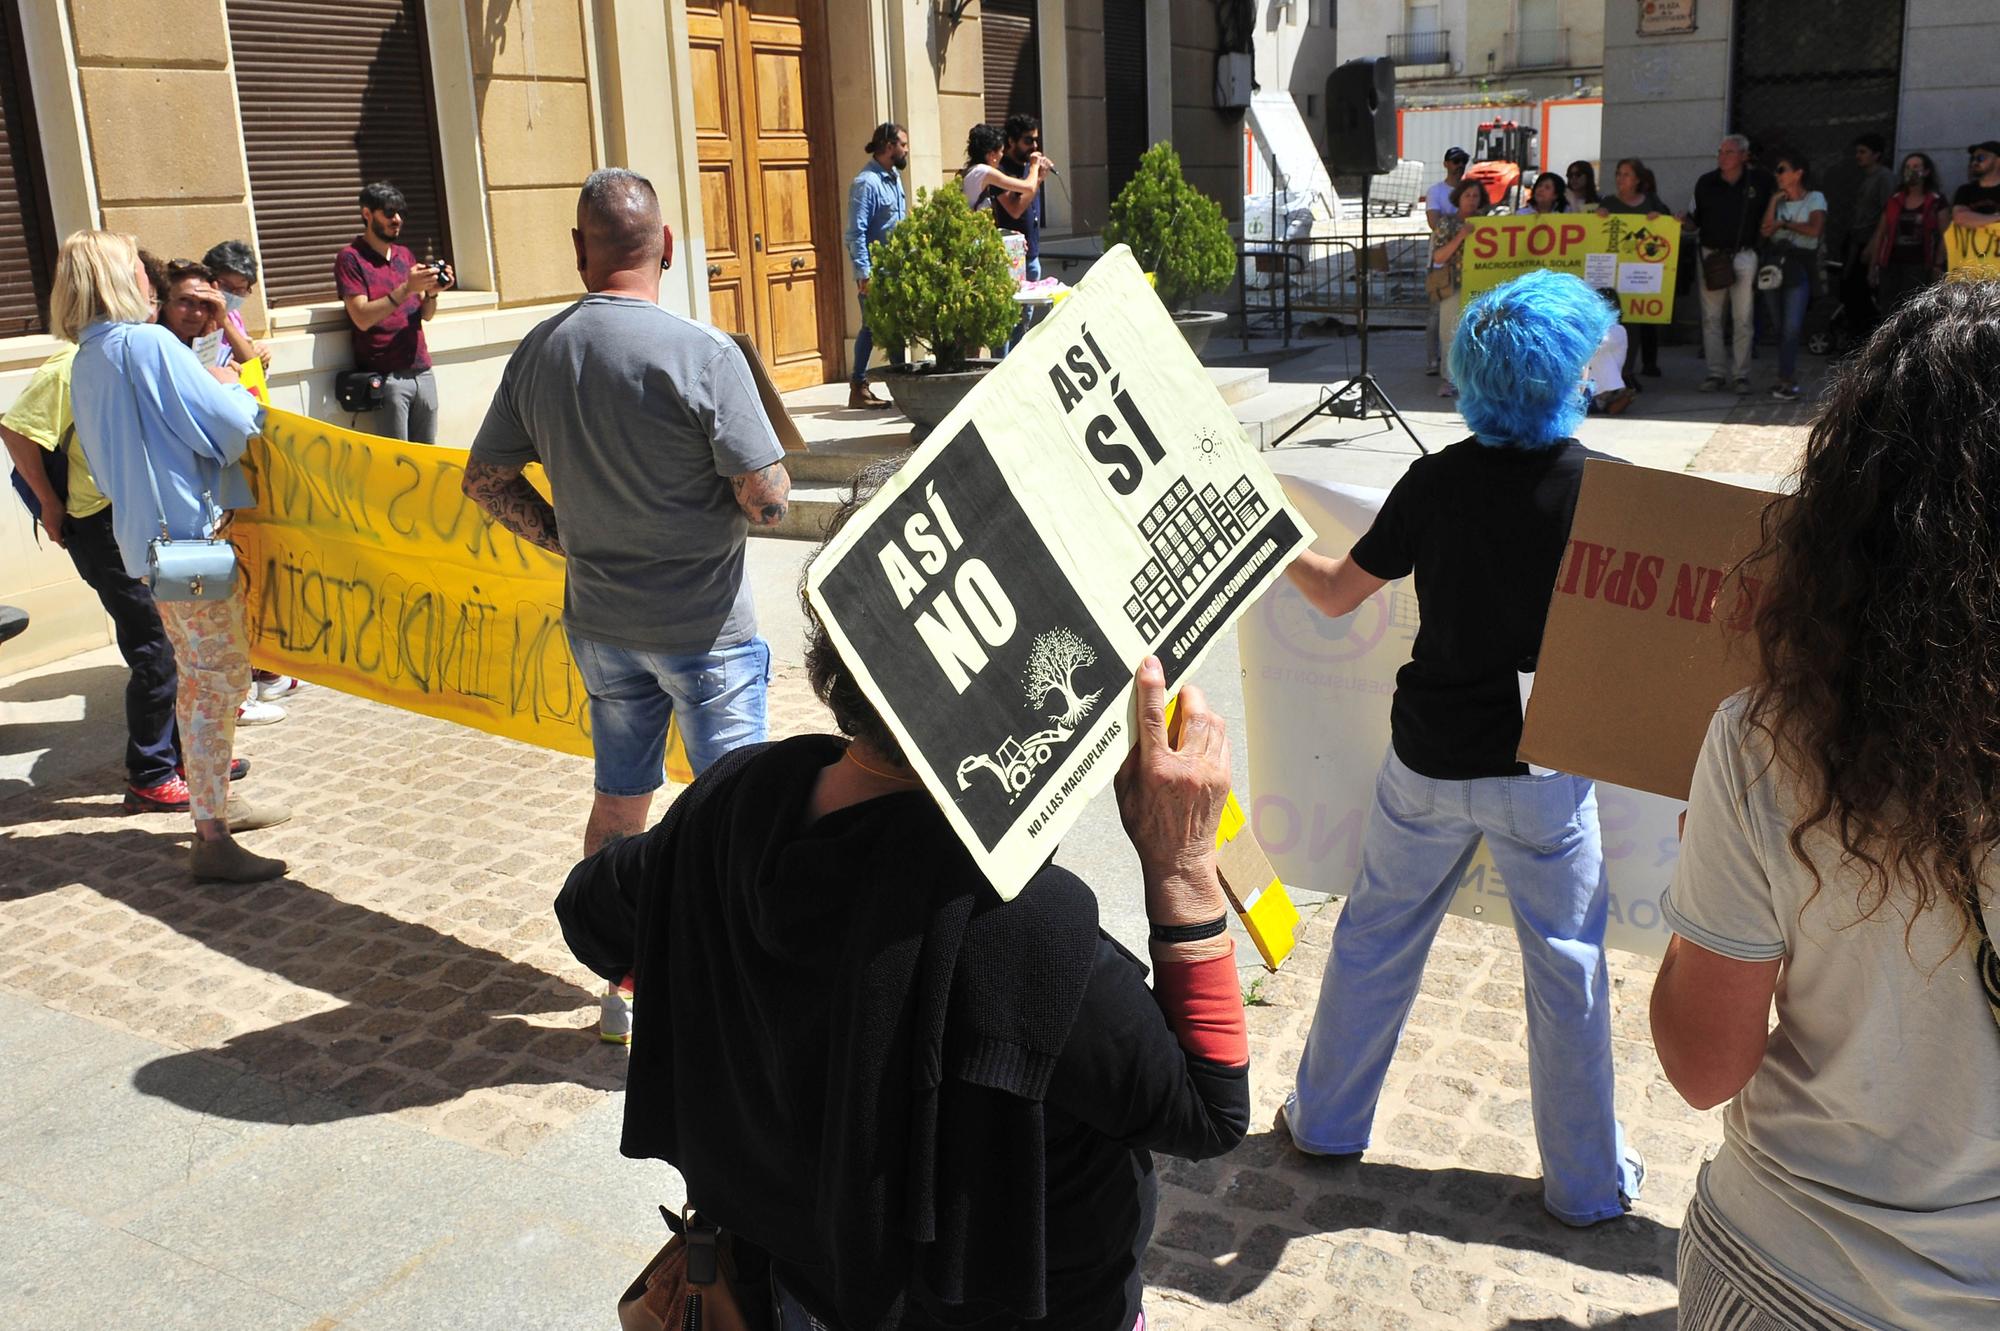 Manifestación contra las plantas solares en Elda